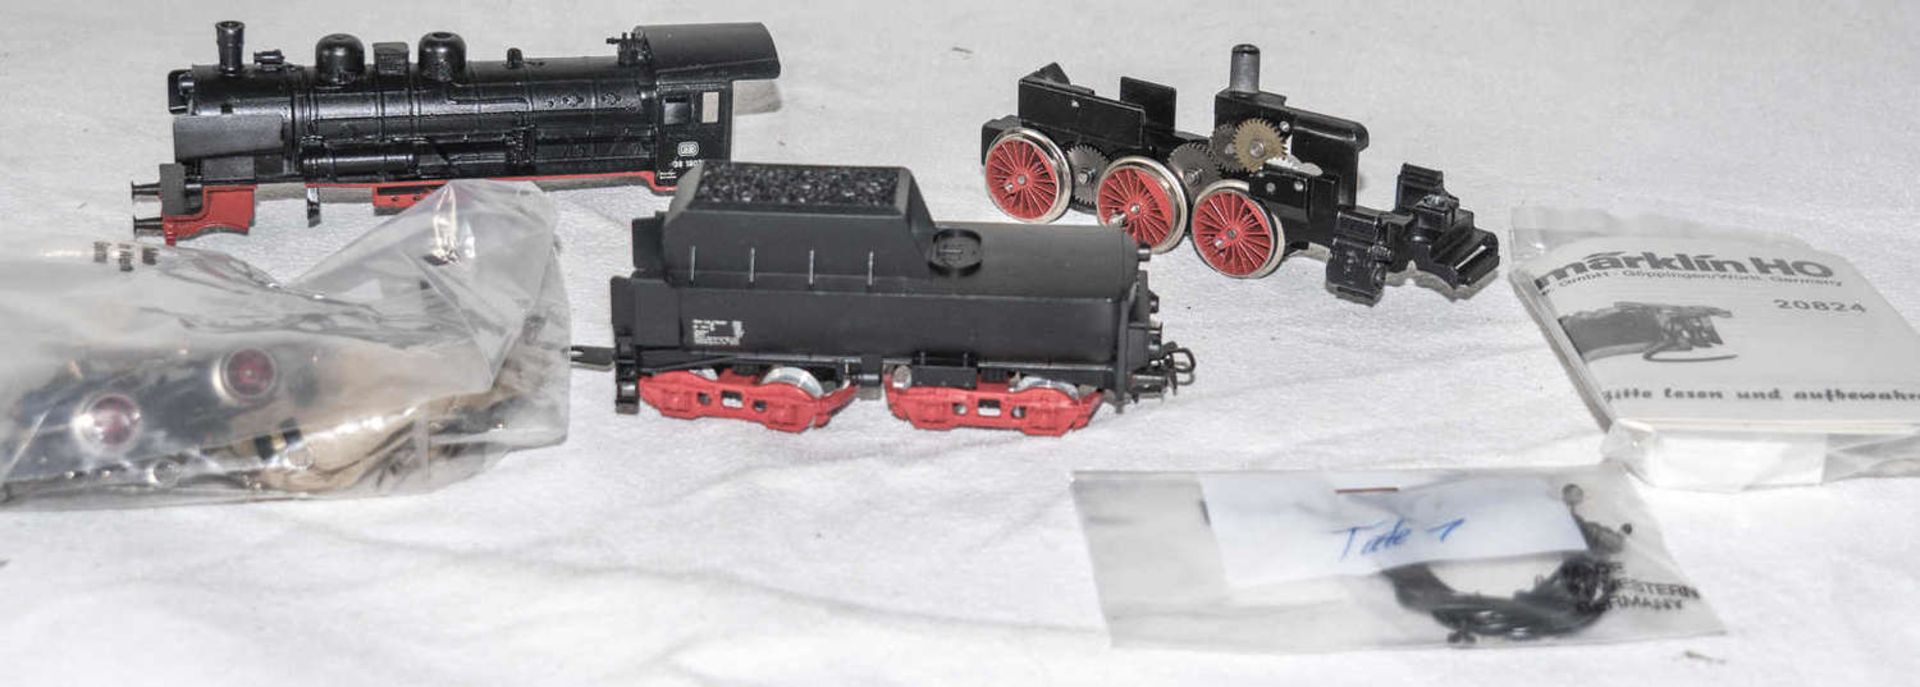 Märklin 3098 Selbstbau - Dampflokomotive BR 38, BN 38 1807. Neuwertig. Märklin 3098 DIY steam